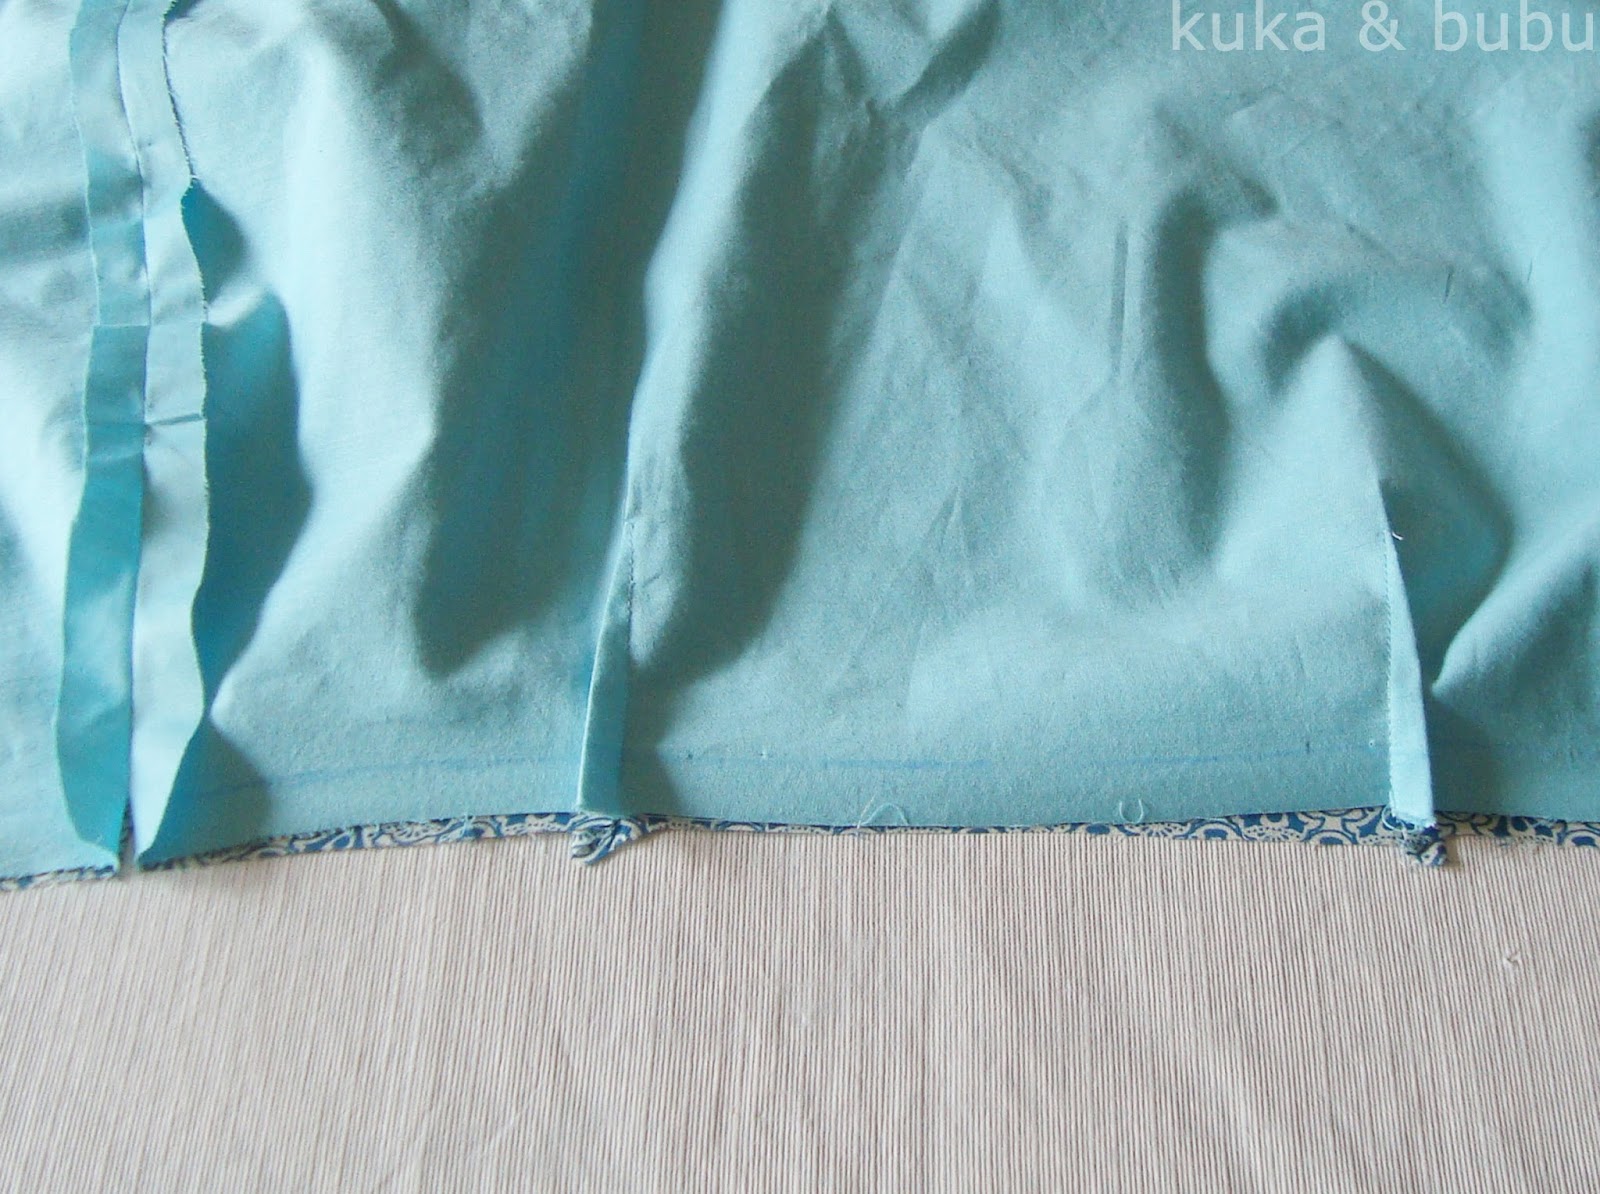 kuka and bubu: Wrap skirt (Pattern by Fitzpatterns)